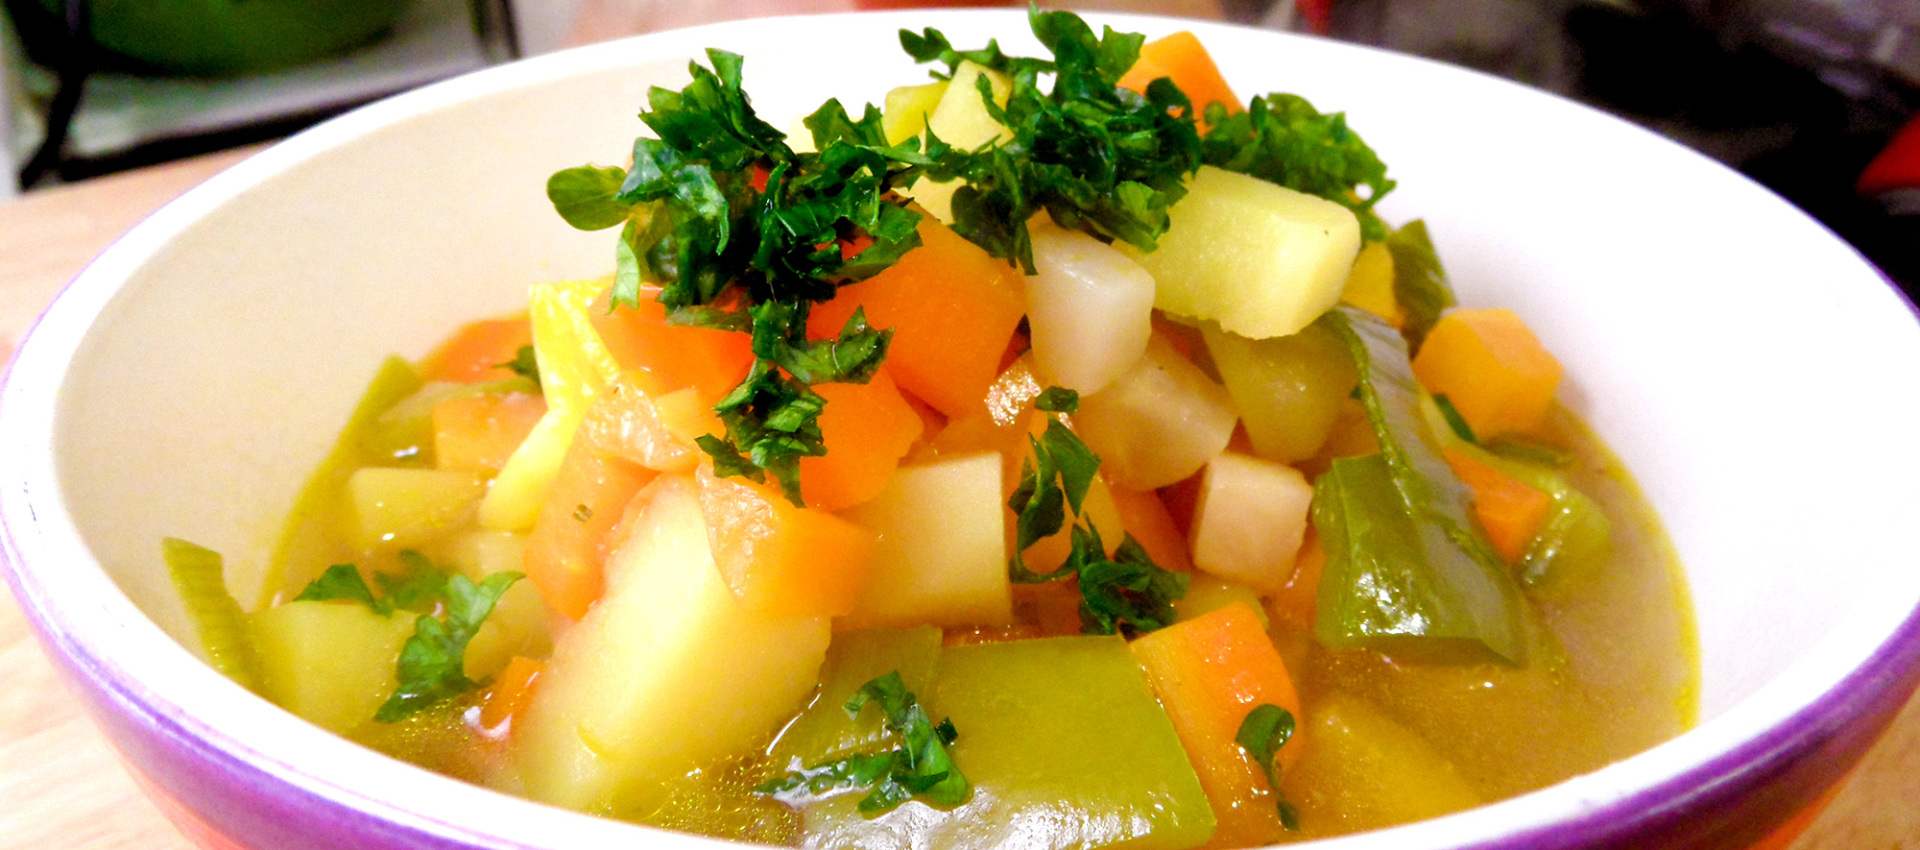 Einfache Gemüsesuppe mit Paprika und Kartoffeln | Kochbock.de